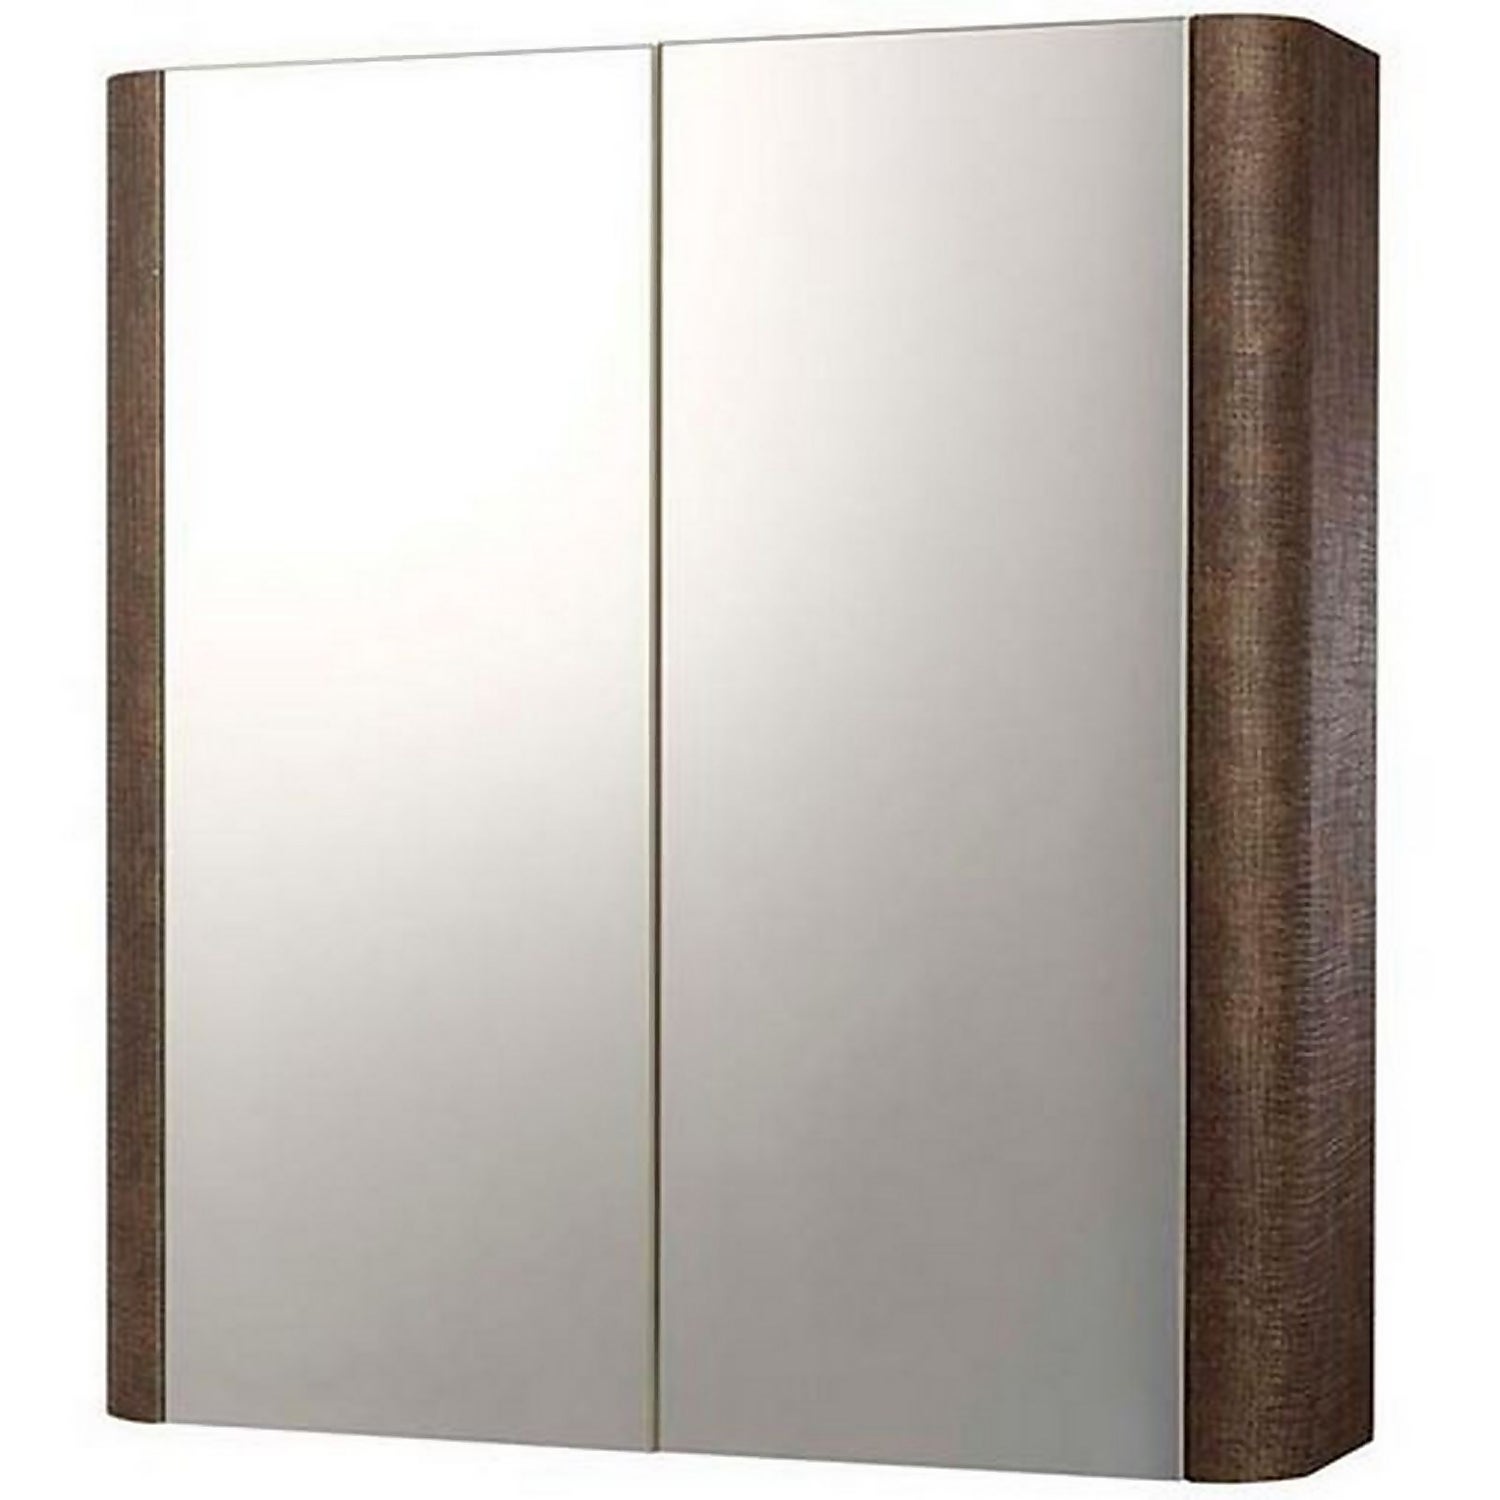 Linen Bathroom Mirror Cabinet 600mm - Rust